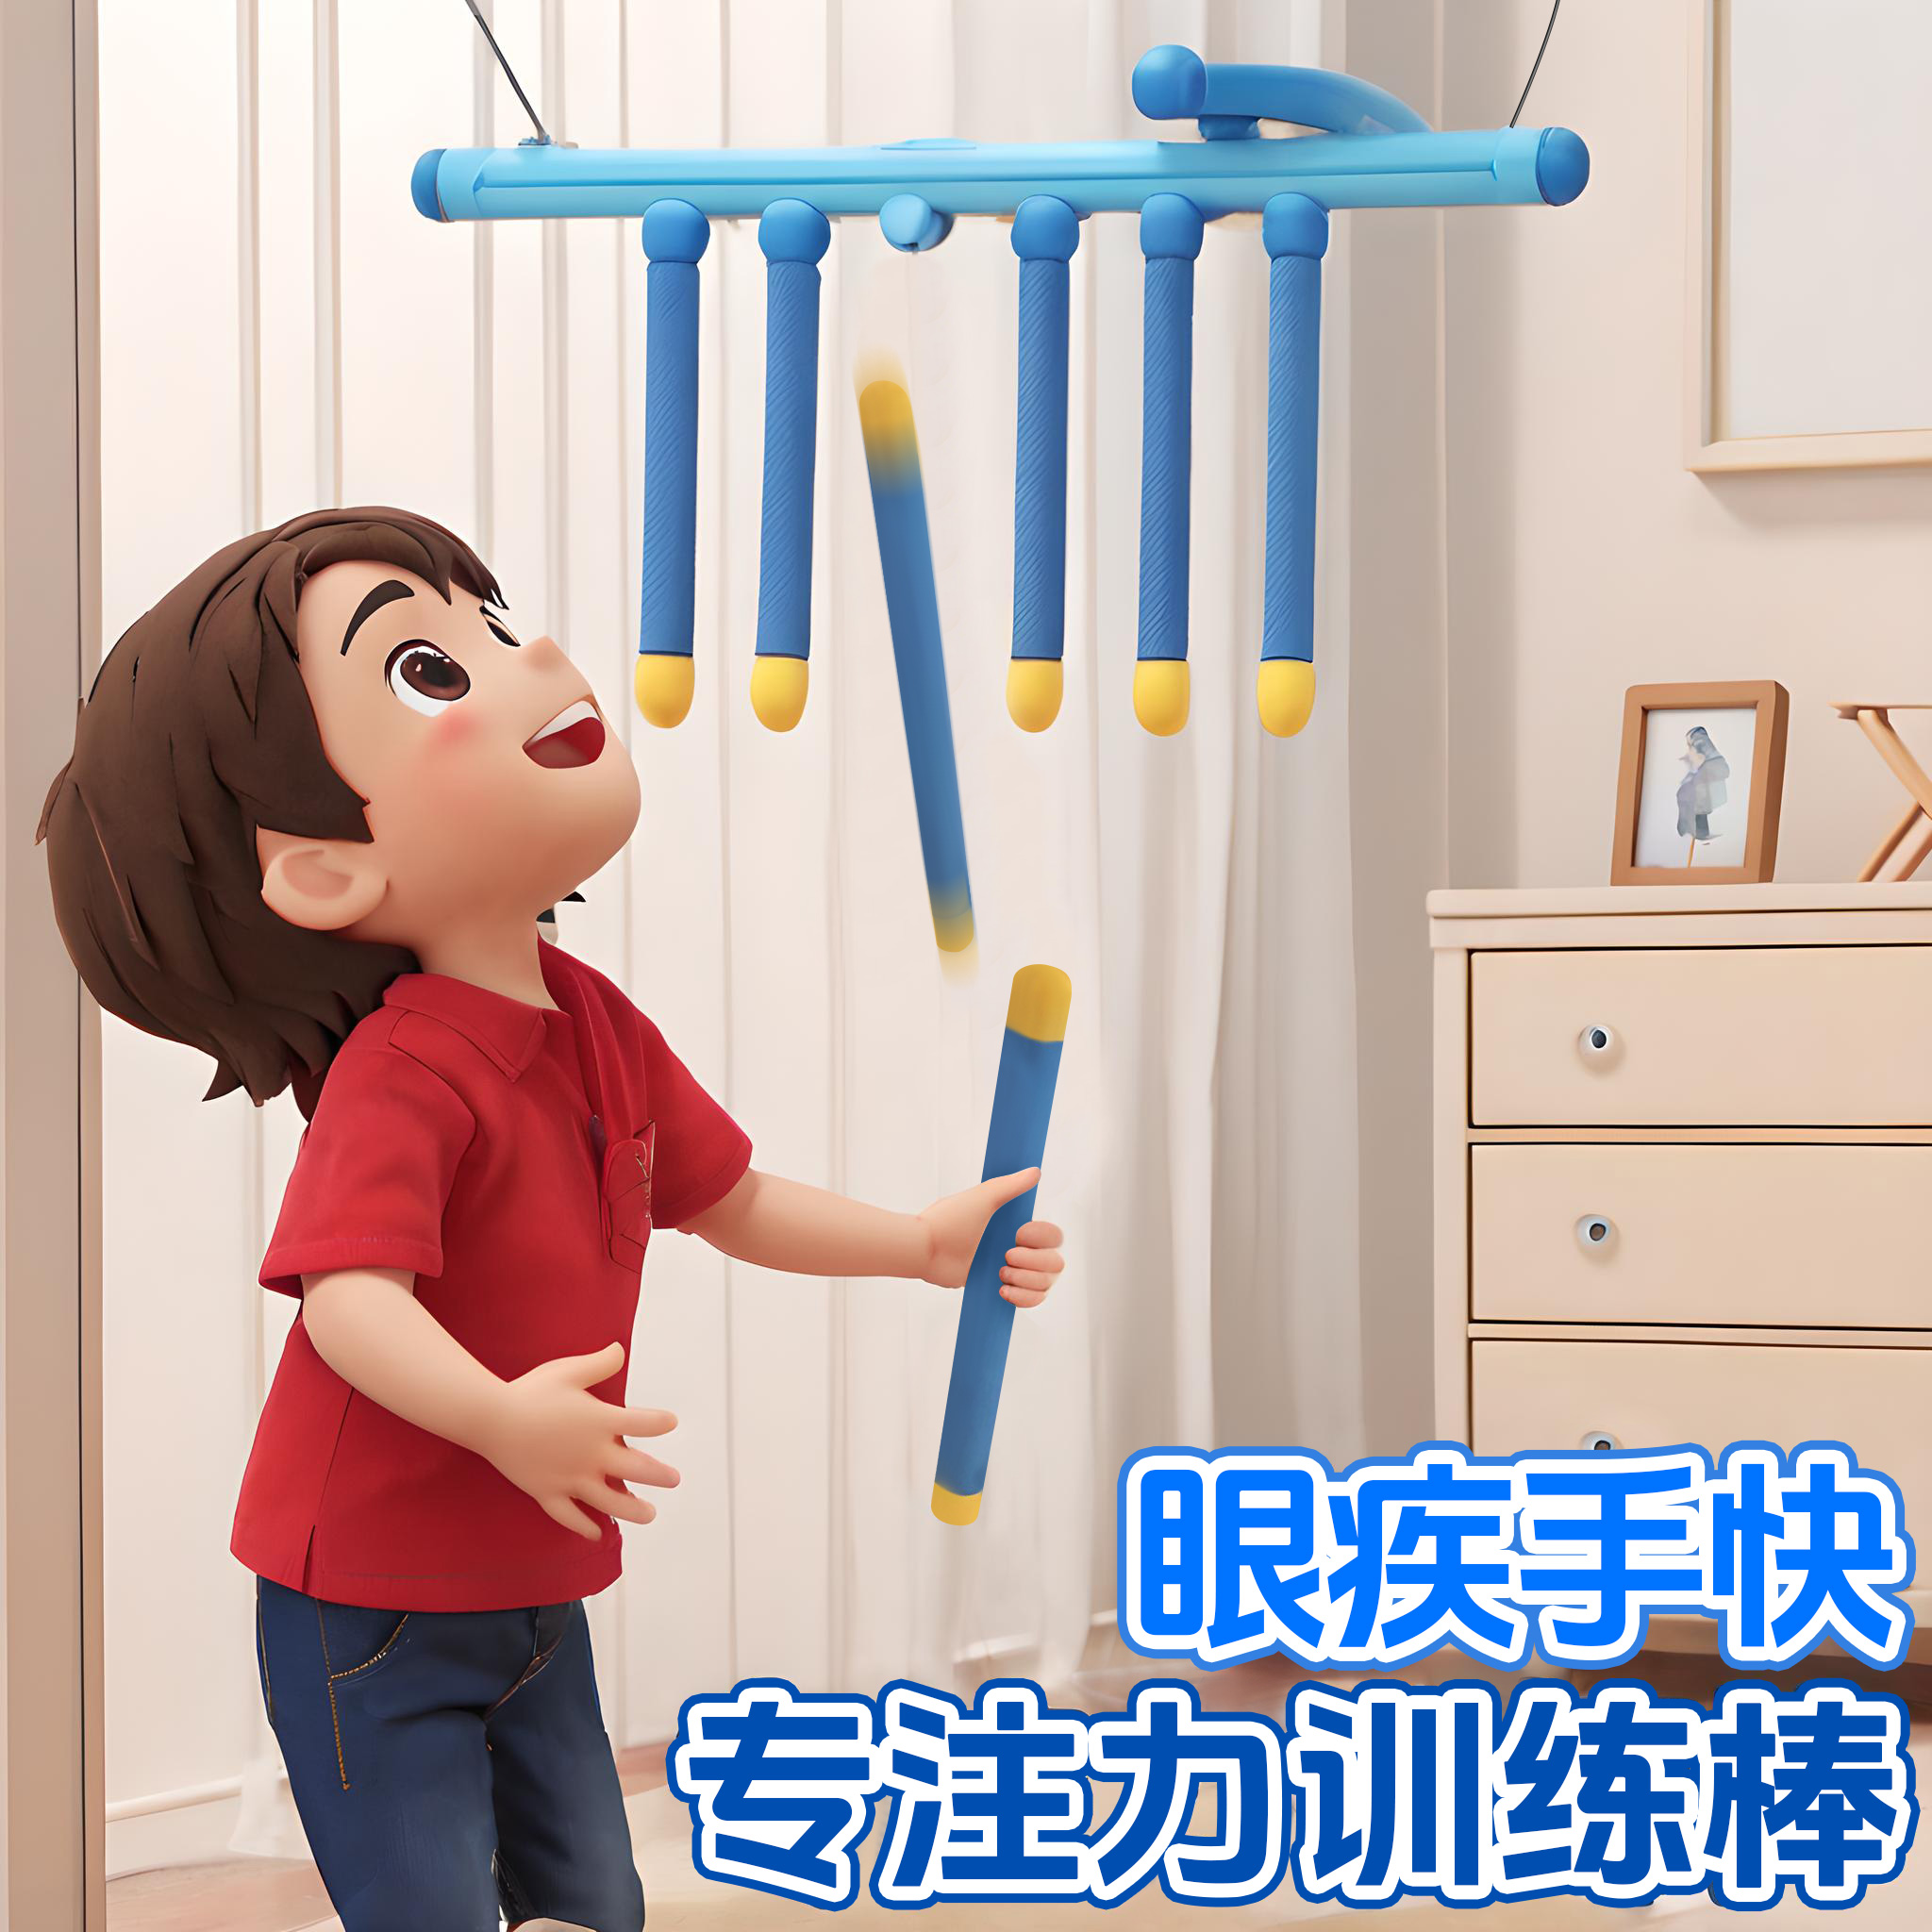 消耗宝宝体力玩具儿童室内运动器材感统体能平衡训练家用在家锻炼